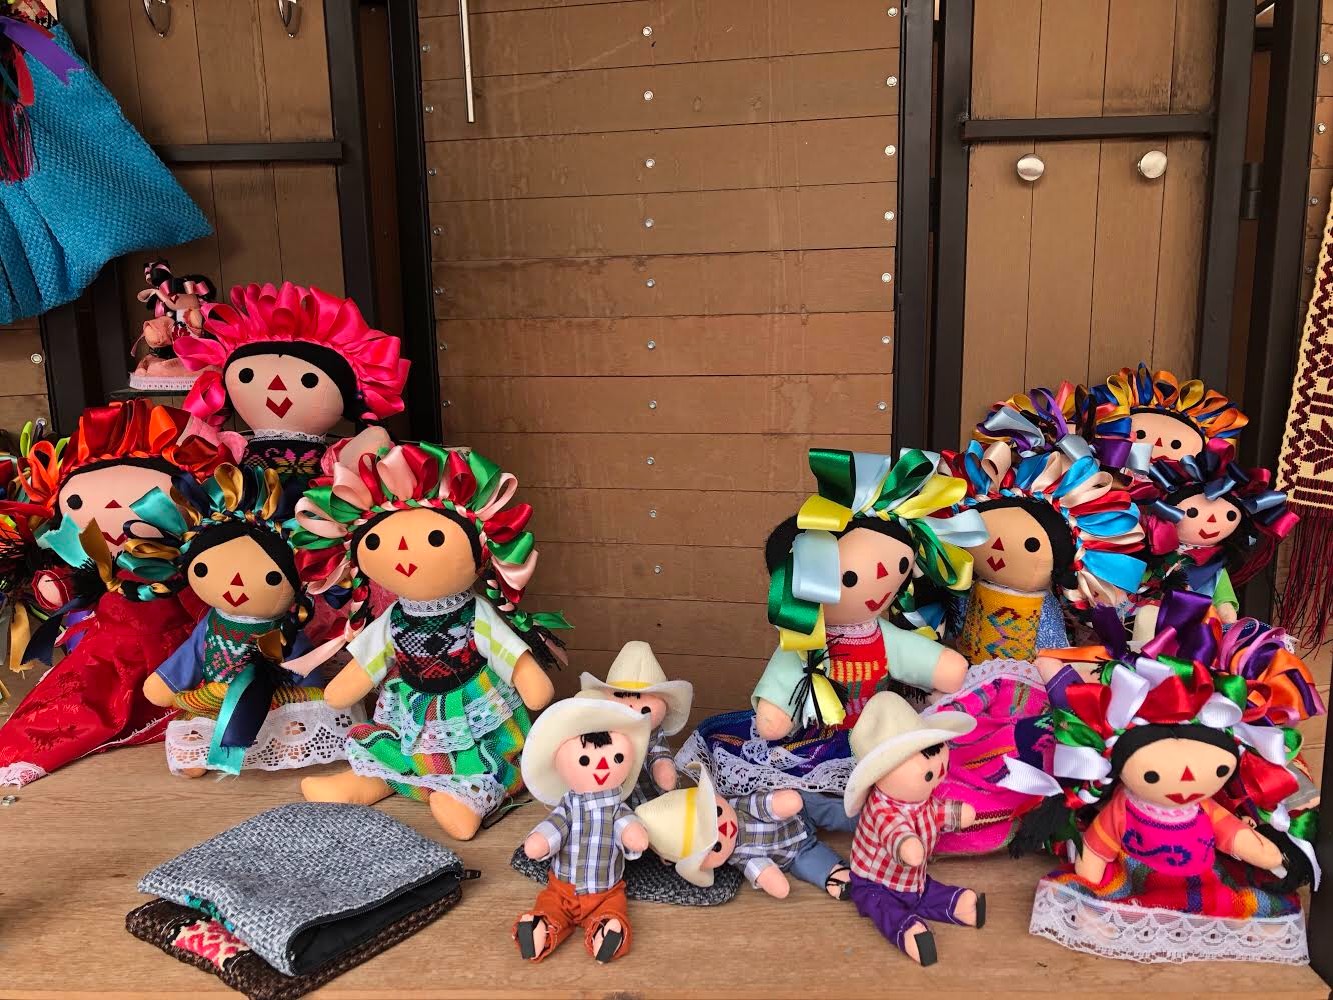  Muñecas de Amealco se consolidan a nivel nacional como juguetes y artesanías